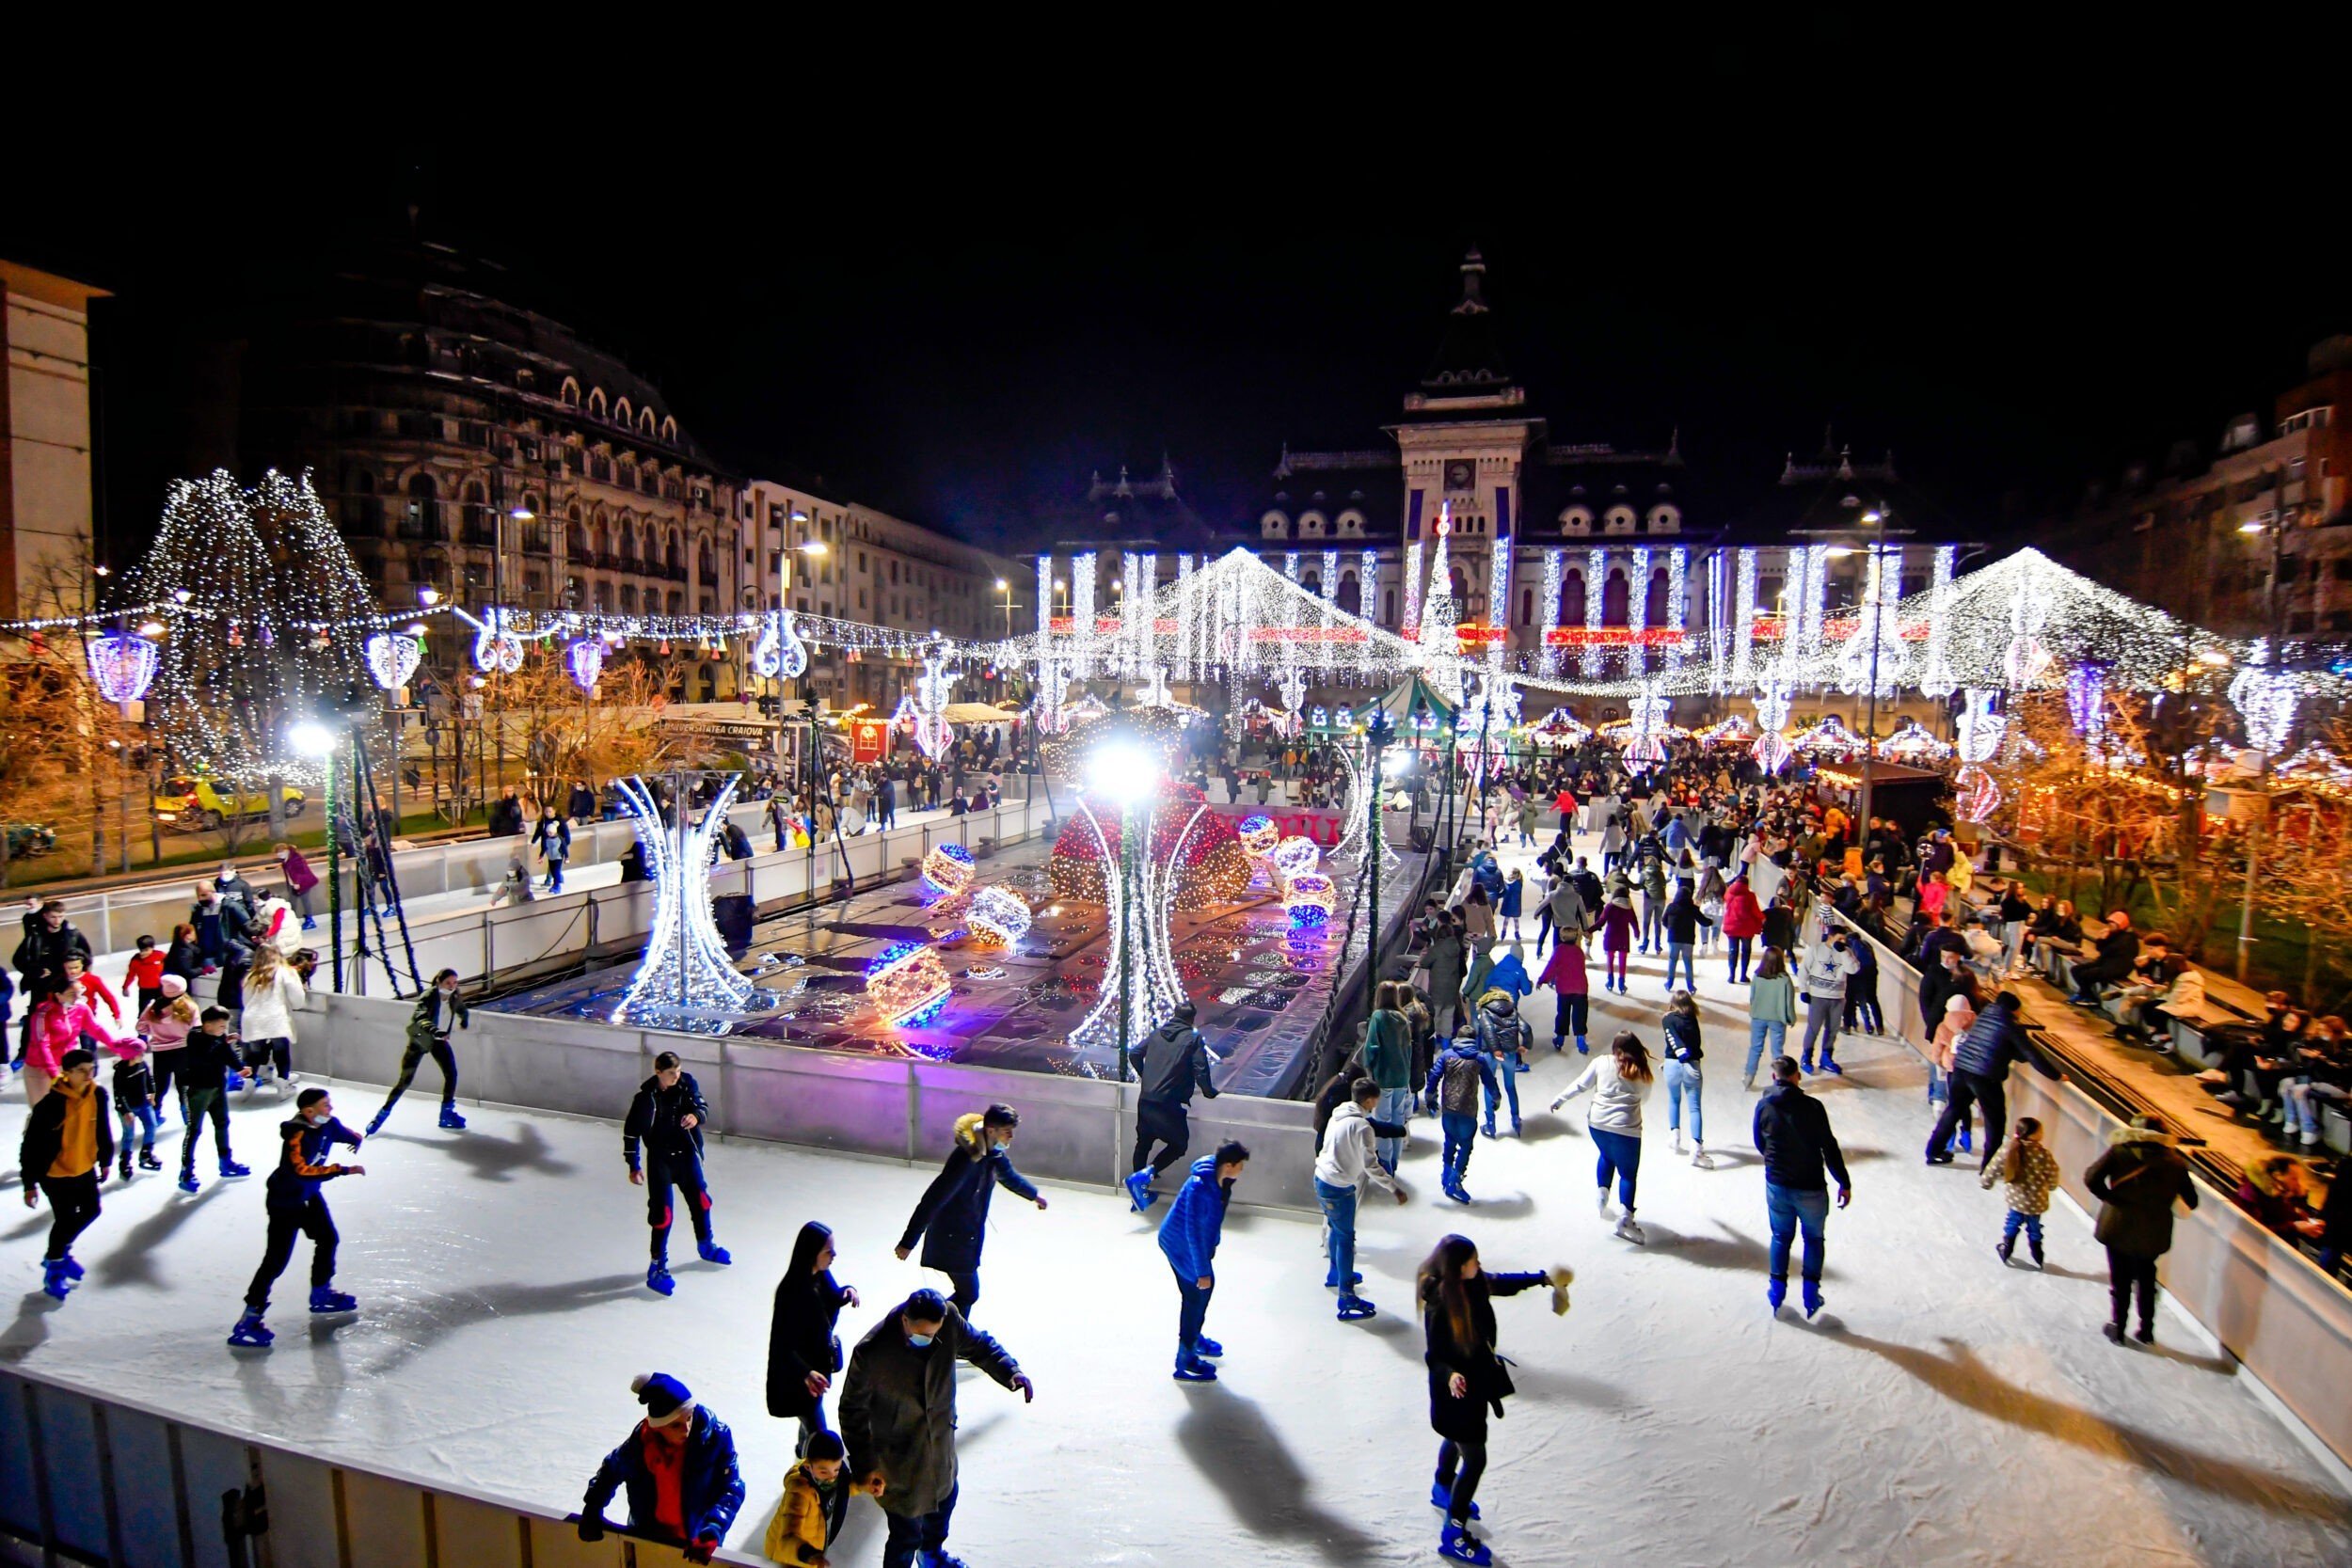  Craiova, locul II într-un top european al celor mai frumoase târguri de Crăciun, pe un site turistic